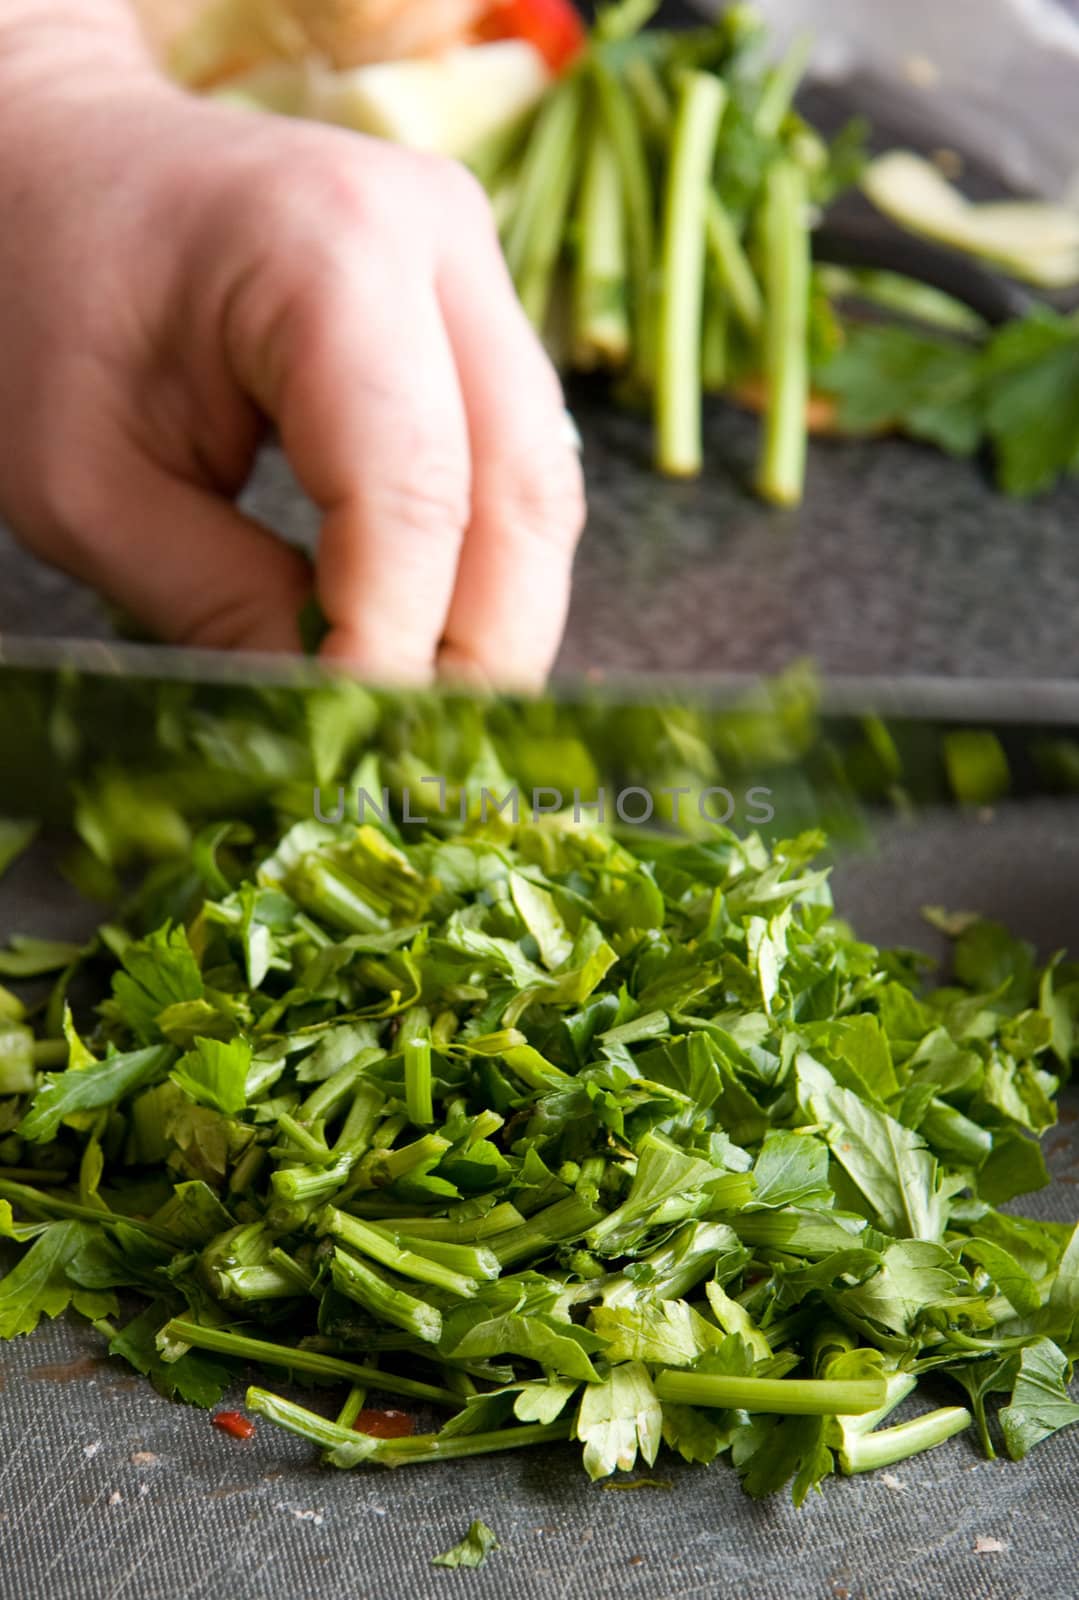 chopping parsley by hildurbjorg